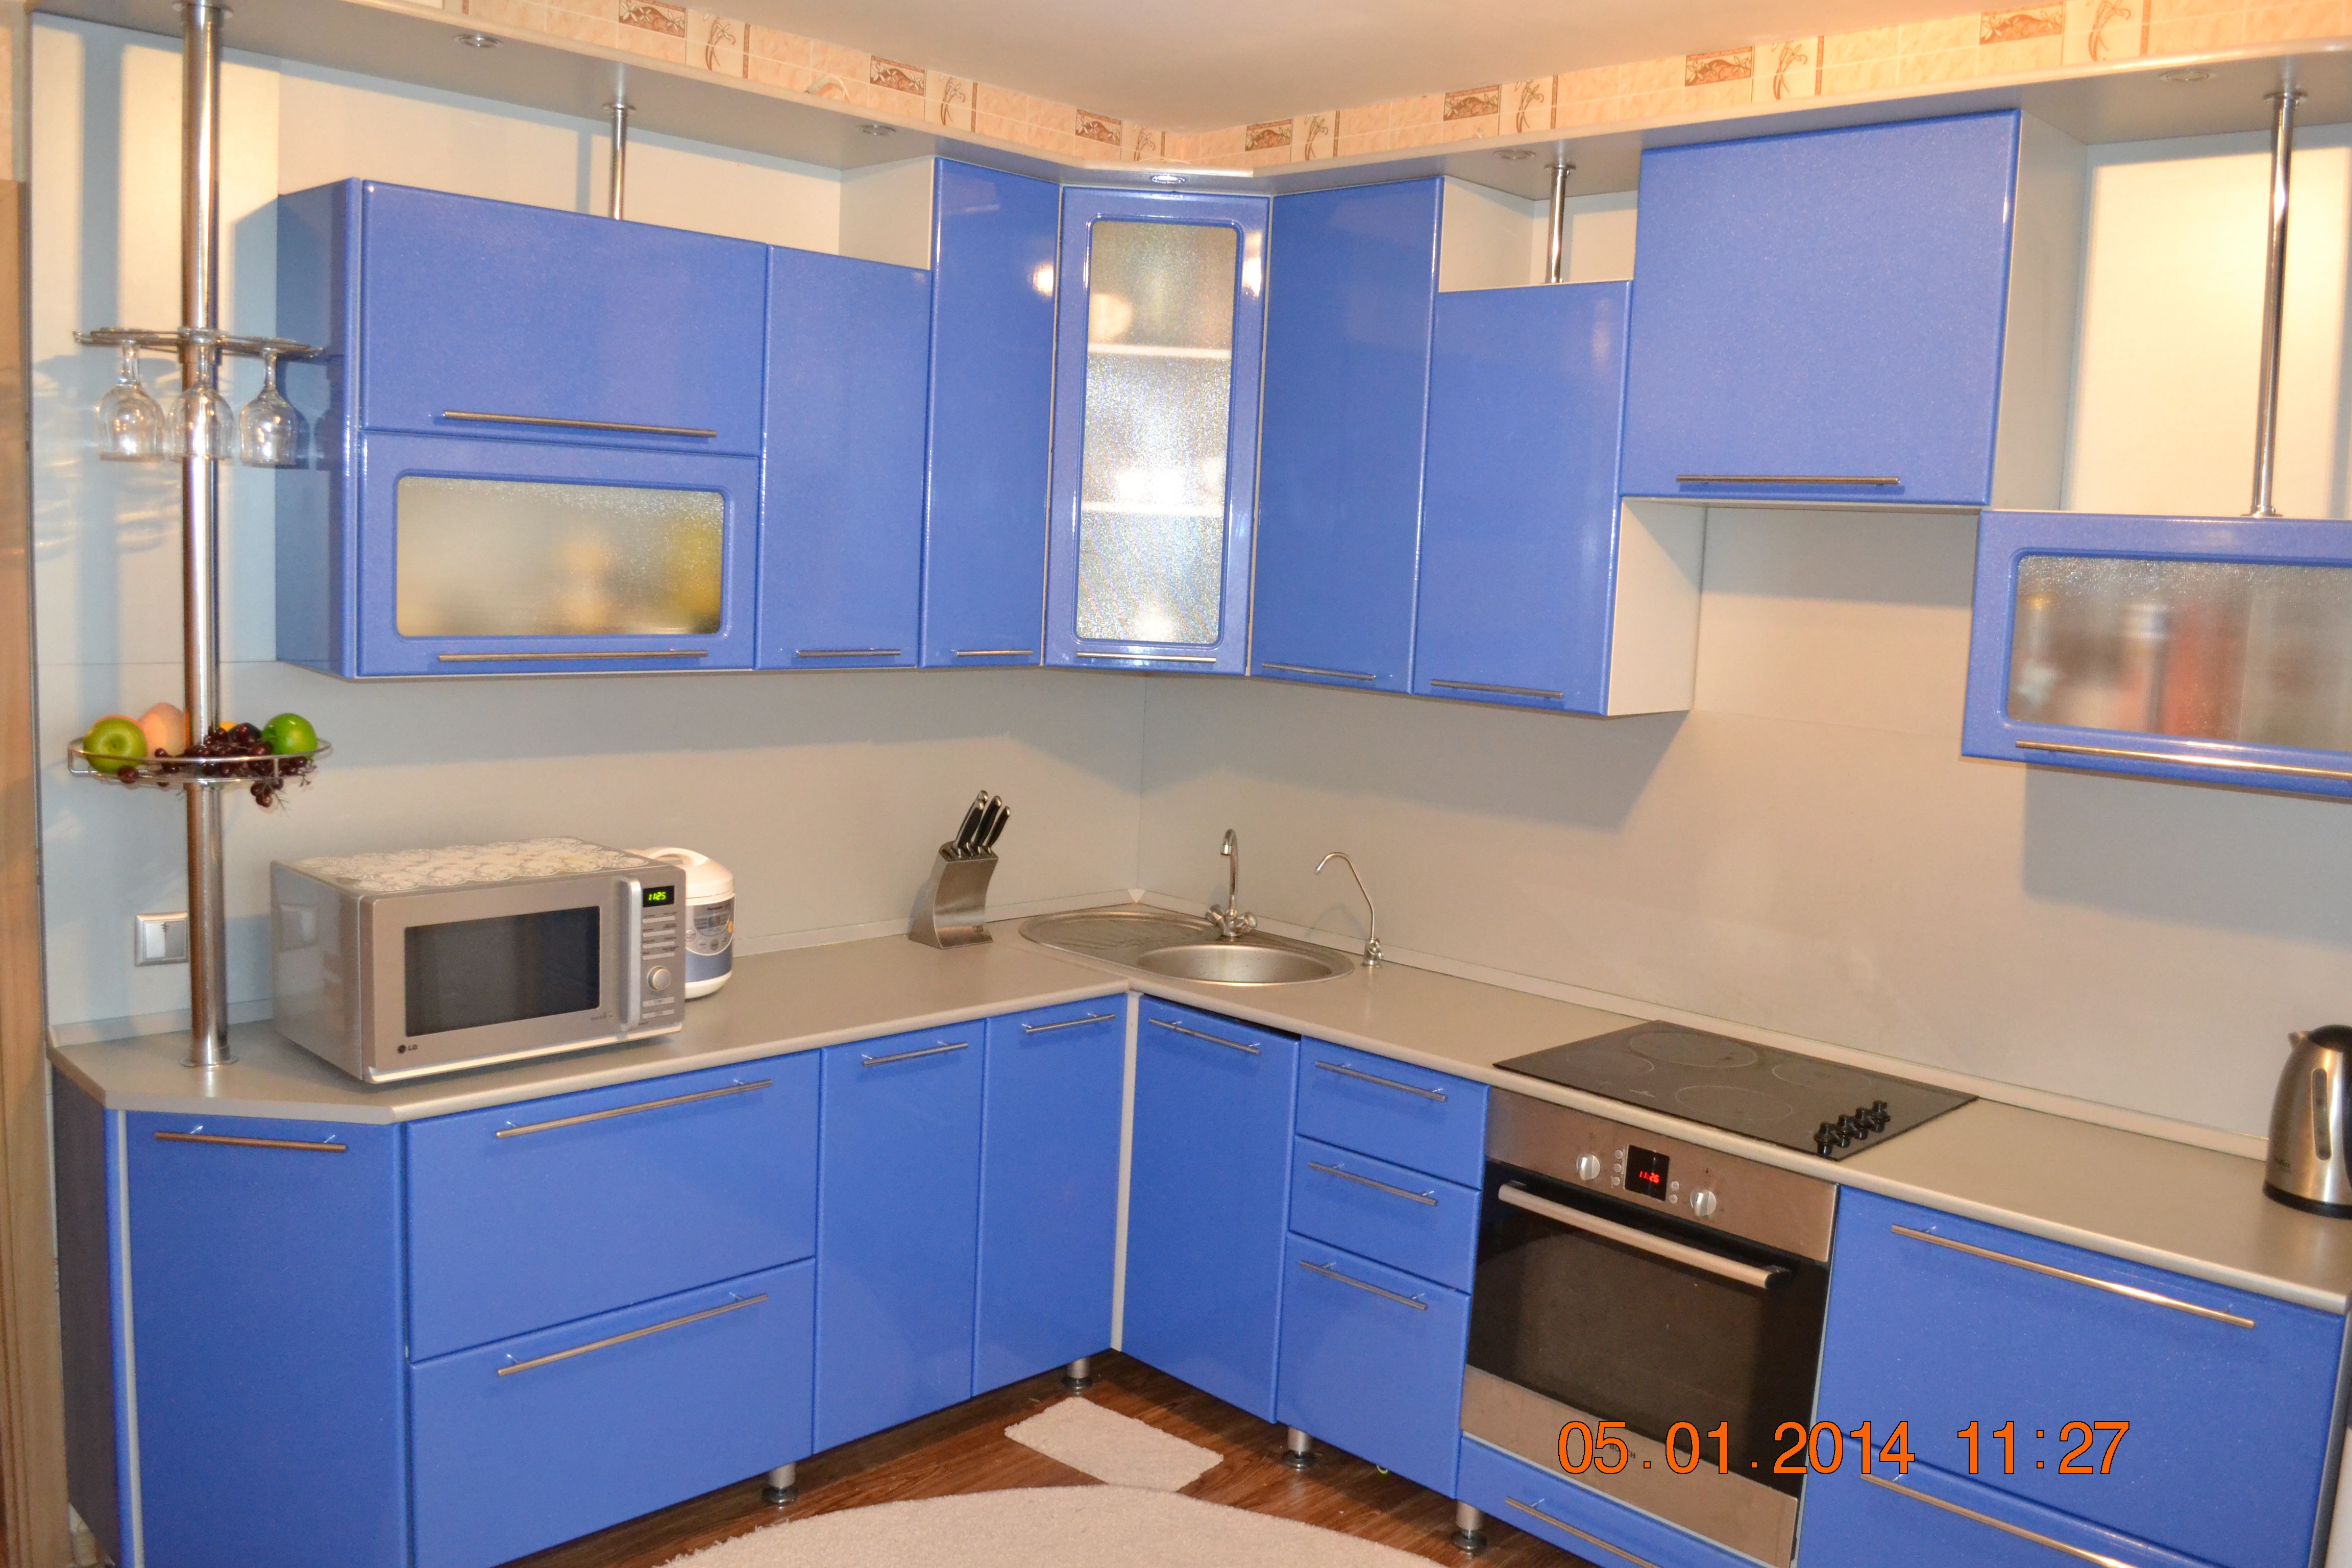 Омск куплю б у кухонный гарнитур. Кухонный гарнитур. Угловые кухни. Кухонный гарнитур угловой синий. Кухня в отличном состоянии.